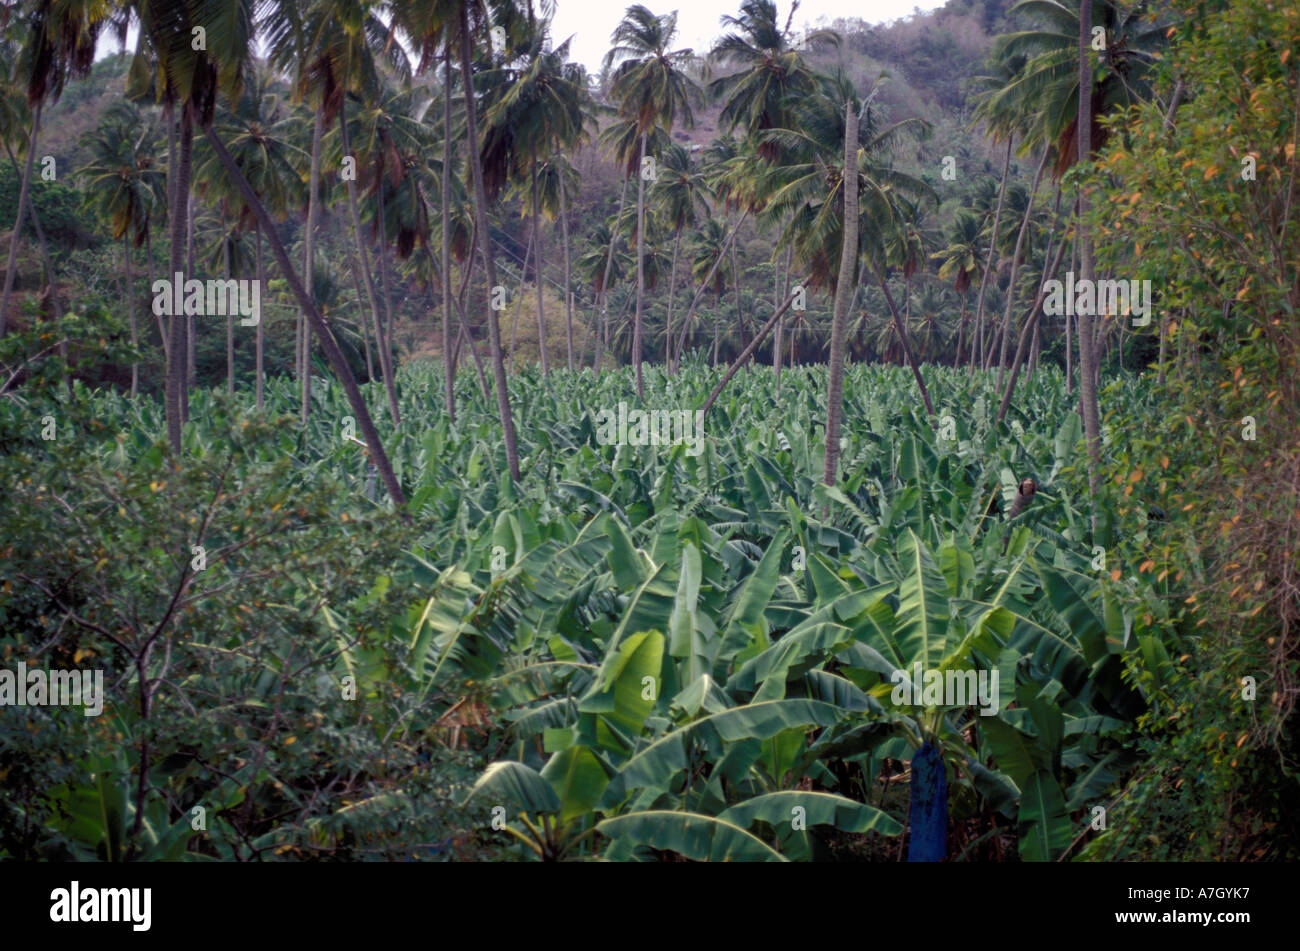 Commercial banana plantation, St. Lucia Stock Photo